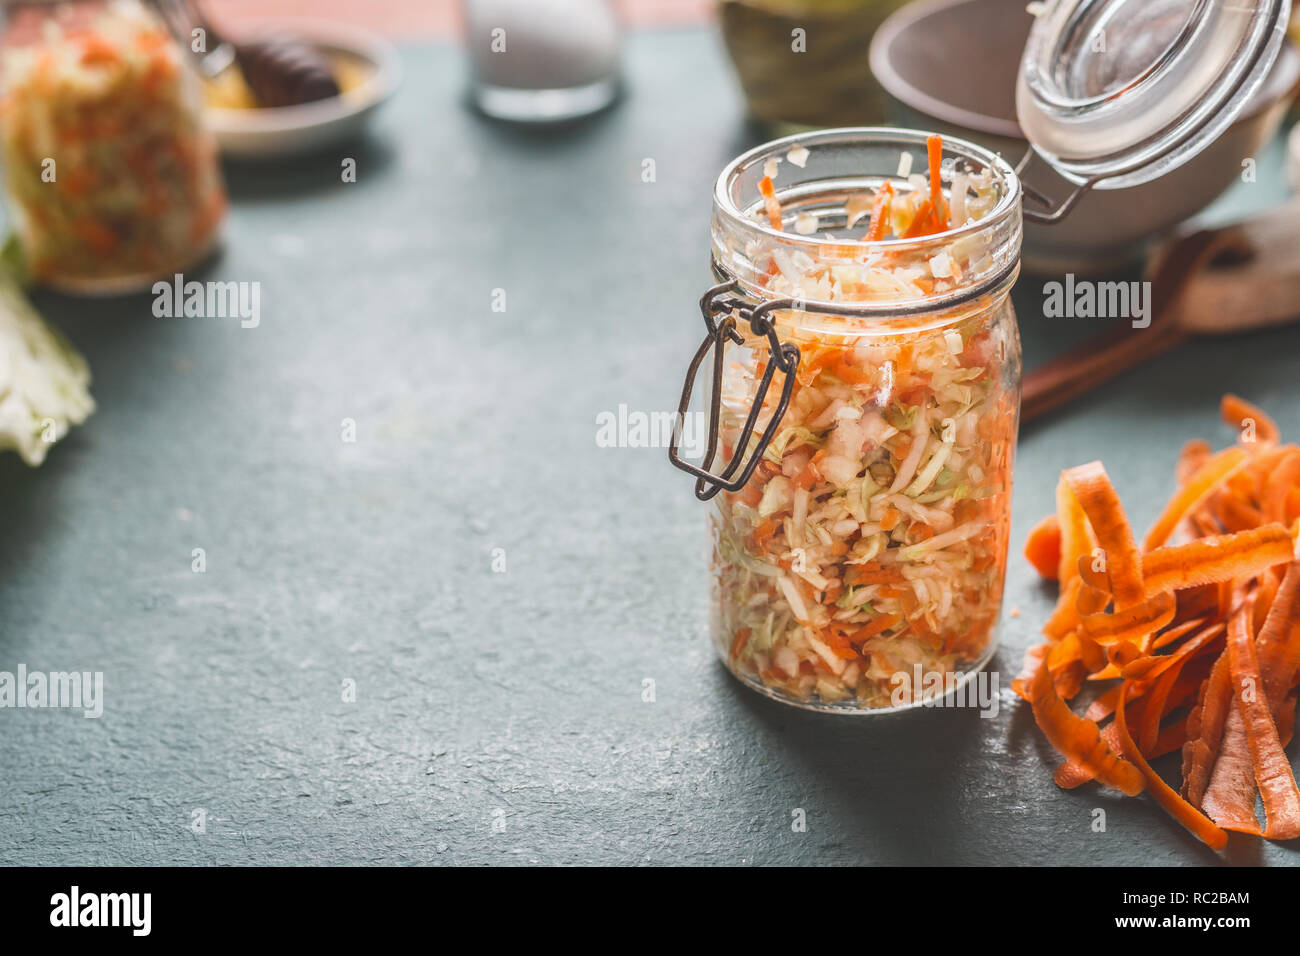 Semplice carota fresca insalata di cavolo in vasetti per salutare il pranzo è sul tavolo da cucina sfondo, vista frontale con copia spazio. Cibo vegetariano, a basso contenuto calorico Foto Stock